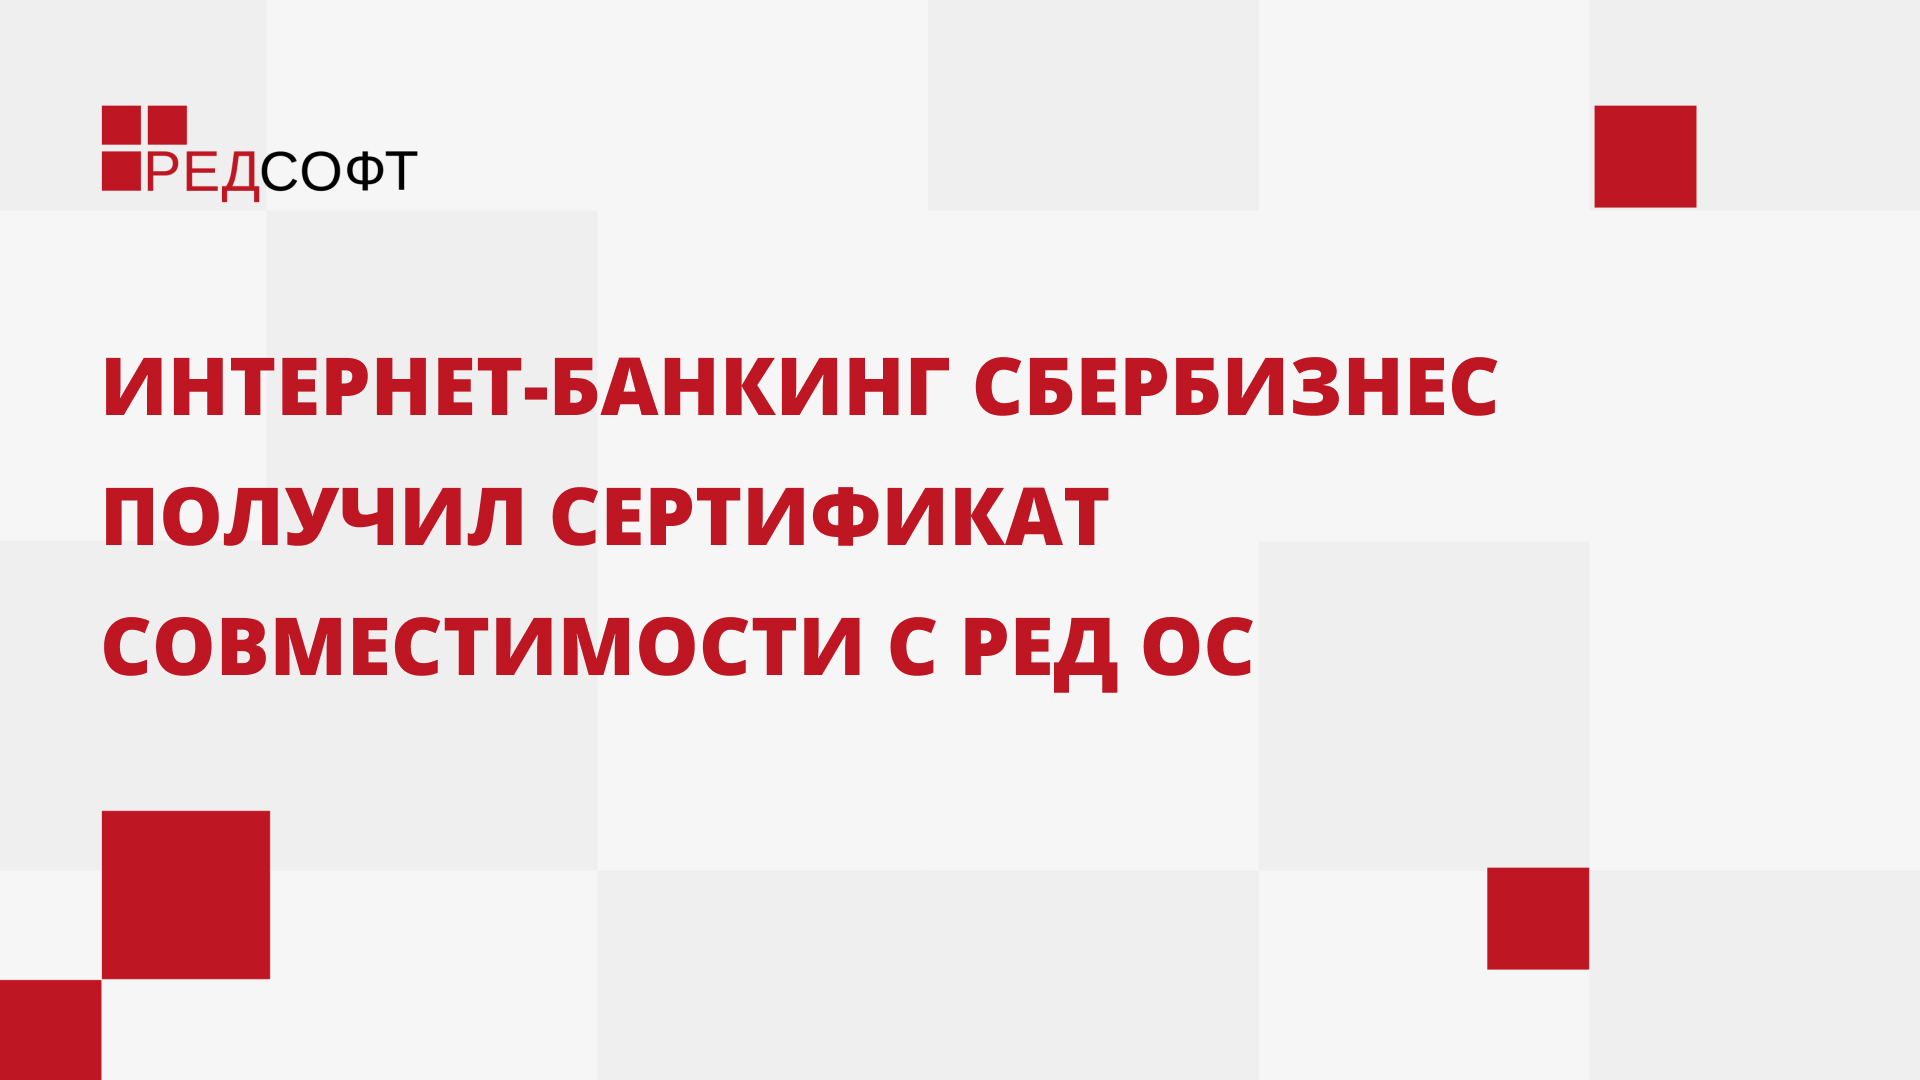 Интернет-банкинг СберБизнес получил сертификат совместимости с РЕД ОС